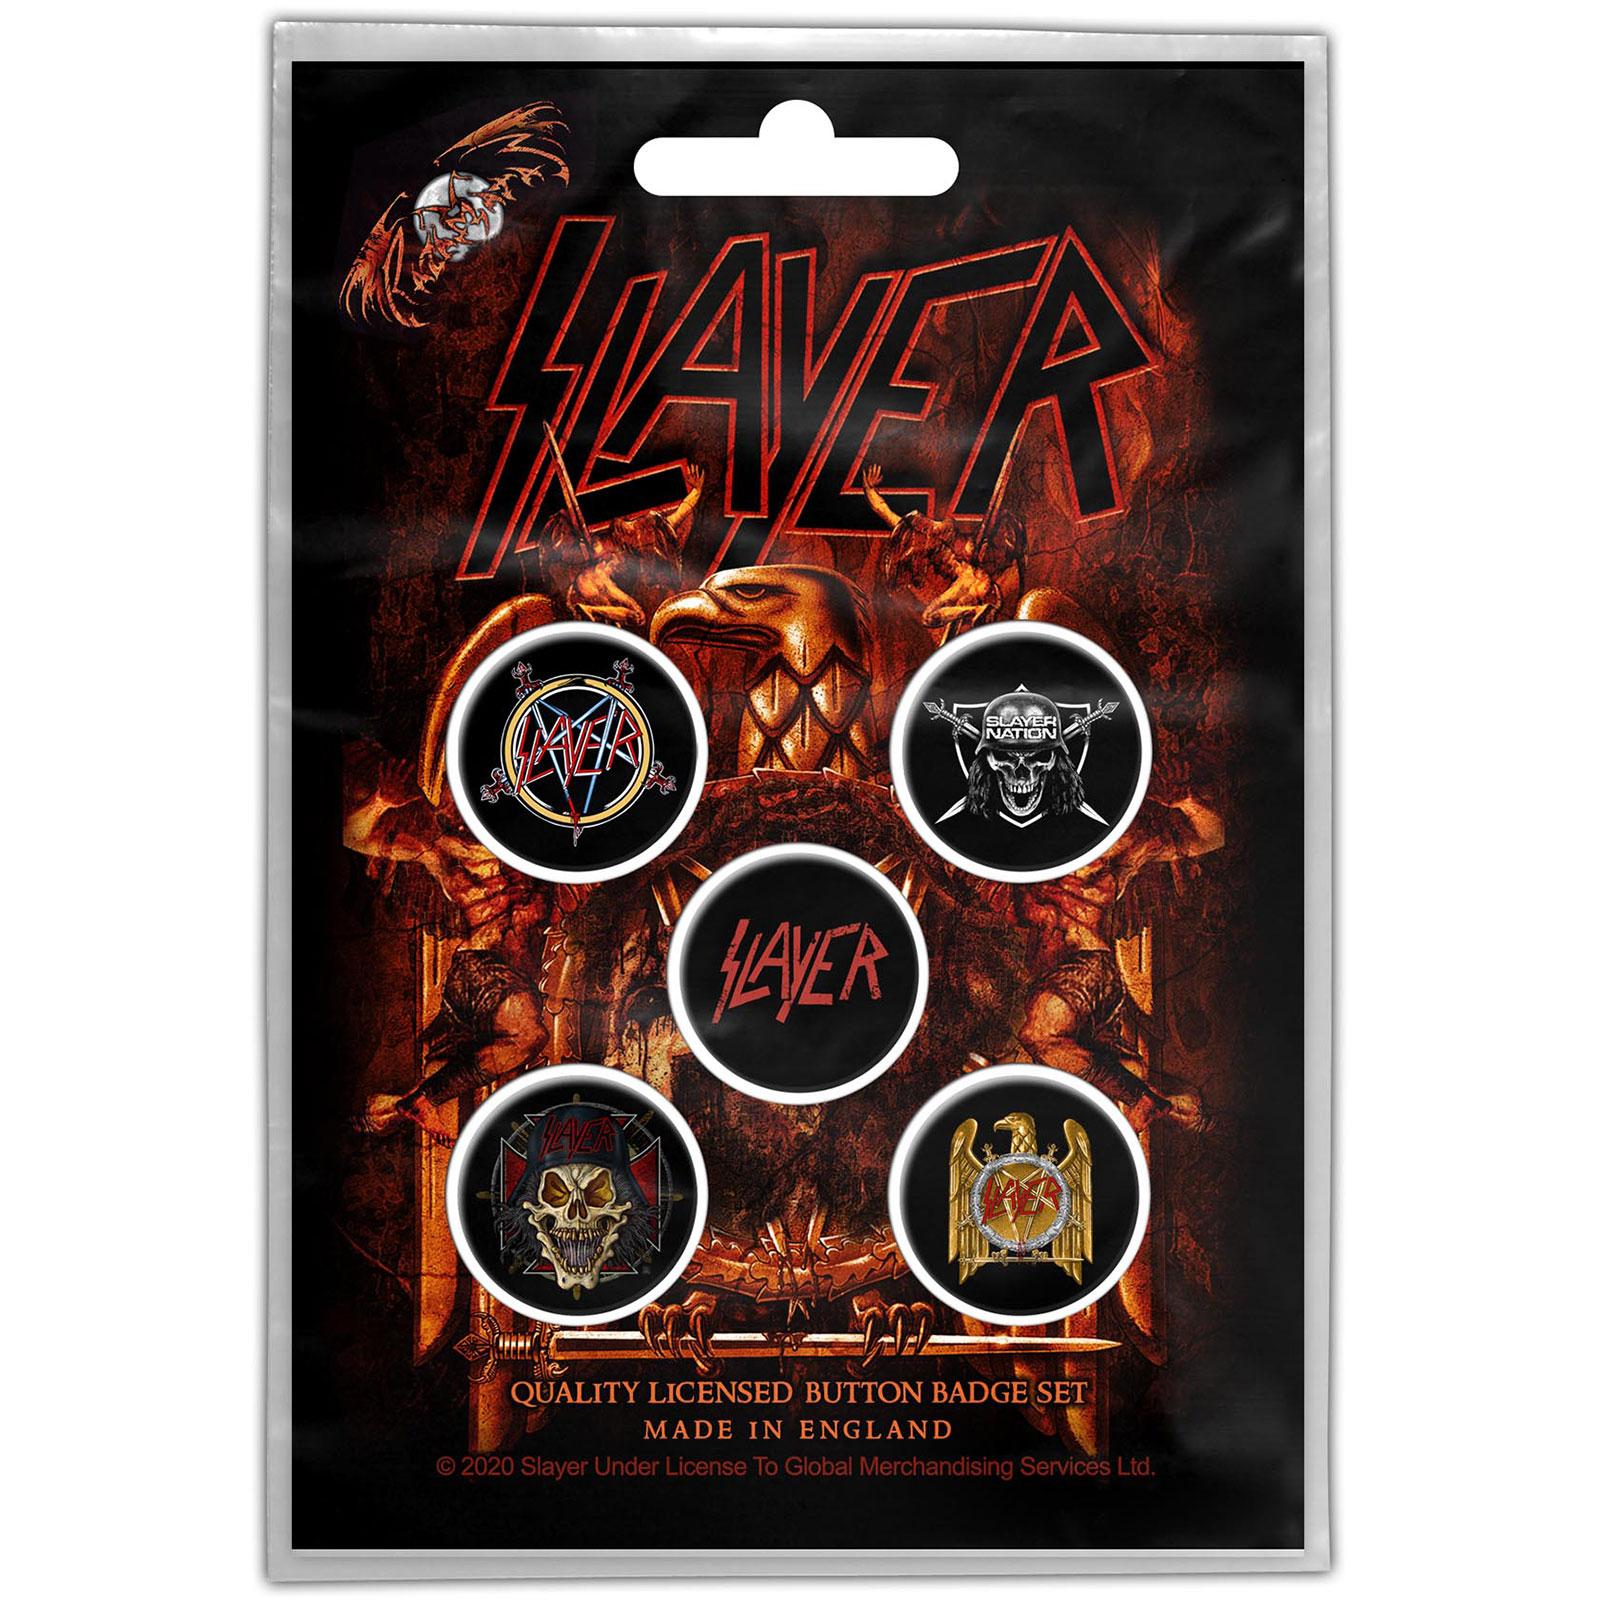 (スレイヤー) Slayer オフィシャル商品 Eagle バッジ セット (5個組) 【海外通販】